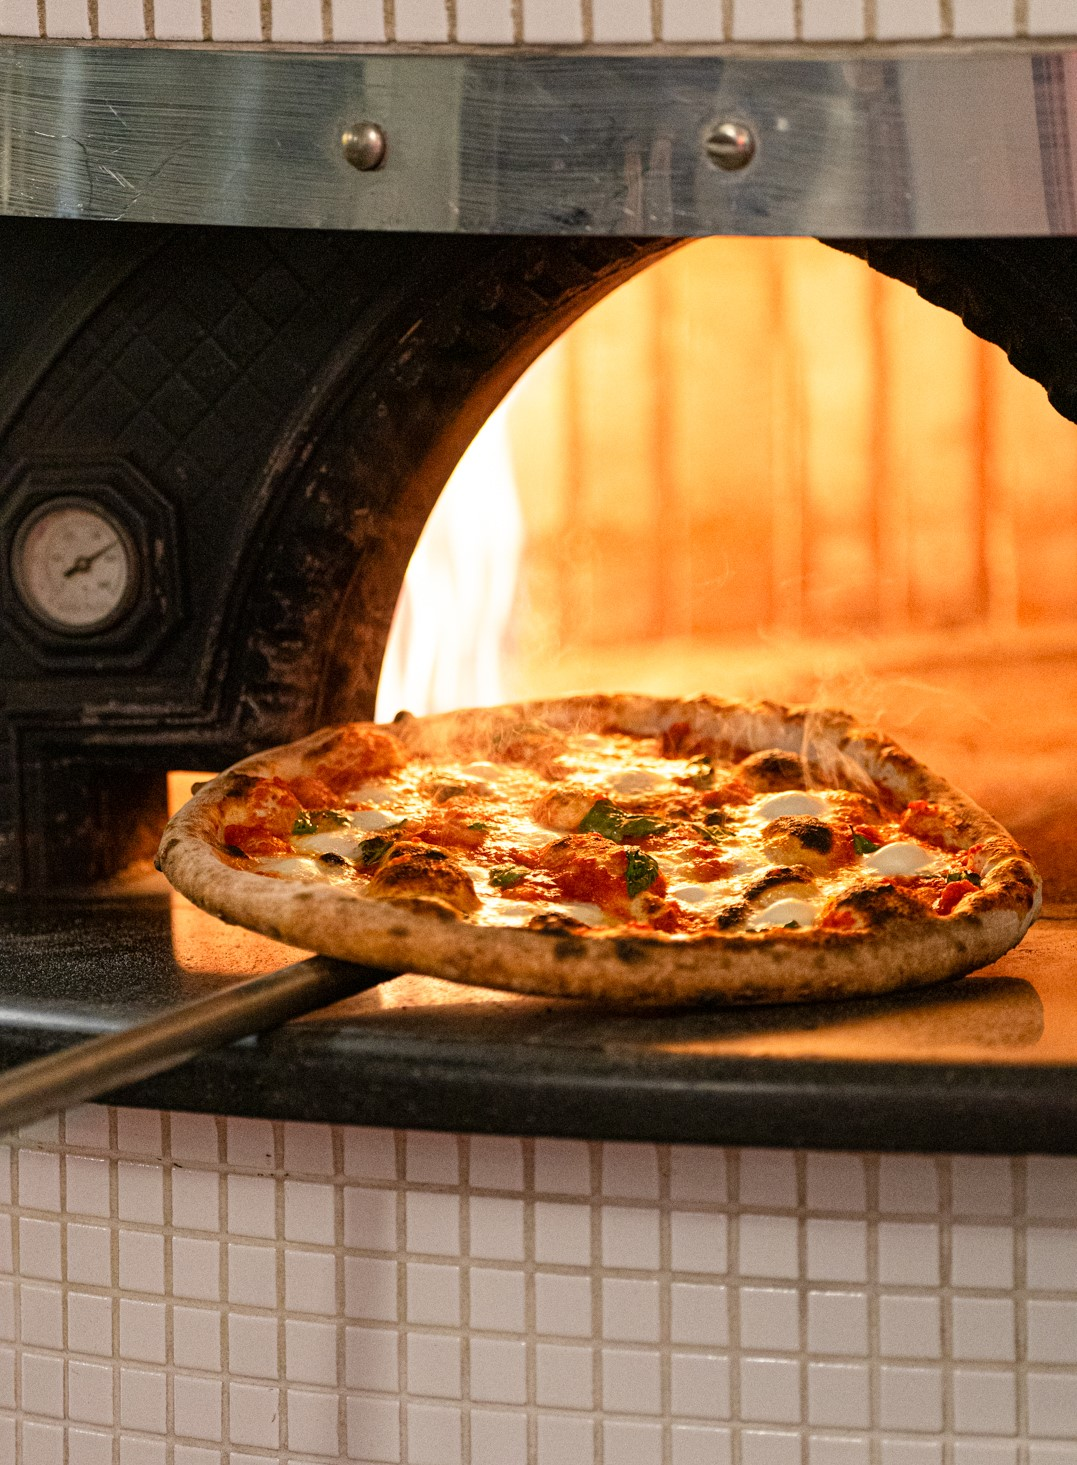 Gabilondo: El arte de una pizza napolitana de masa madre en 90 segundos